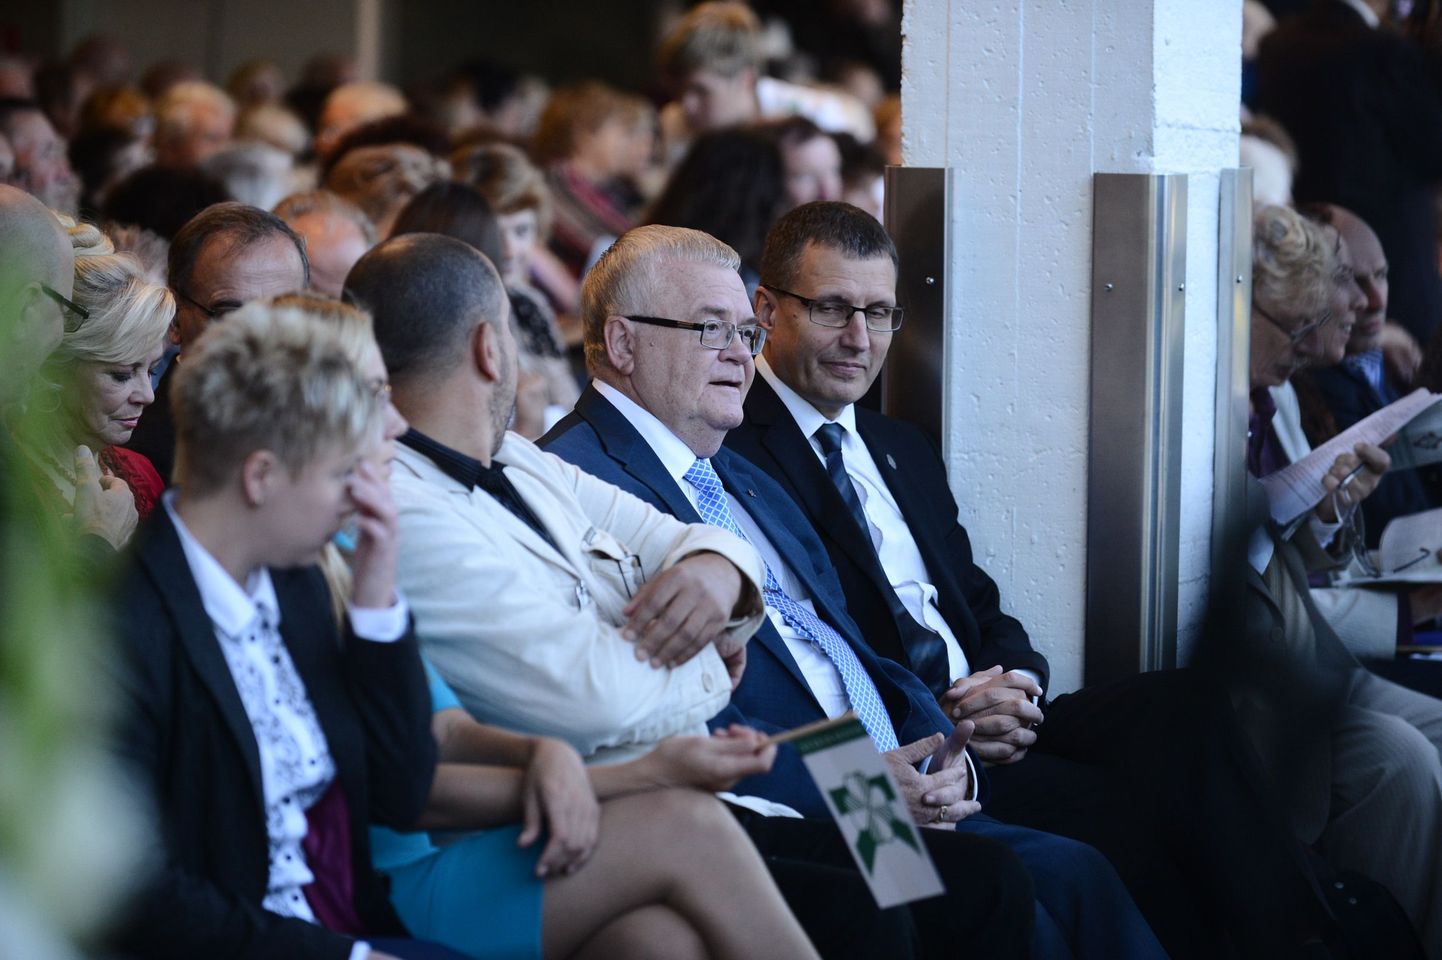 Täna toimub Tallinna Lauluväljaku klaassaalis Keskerakonna kongress.